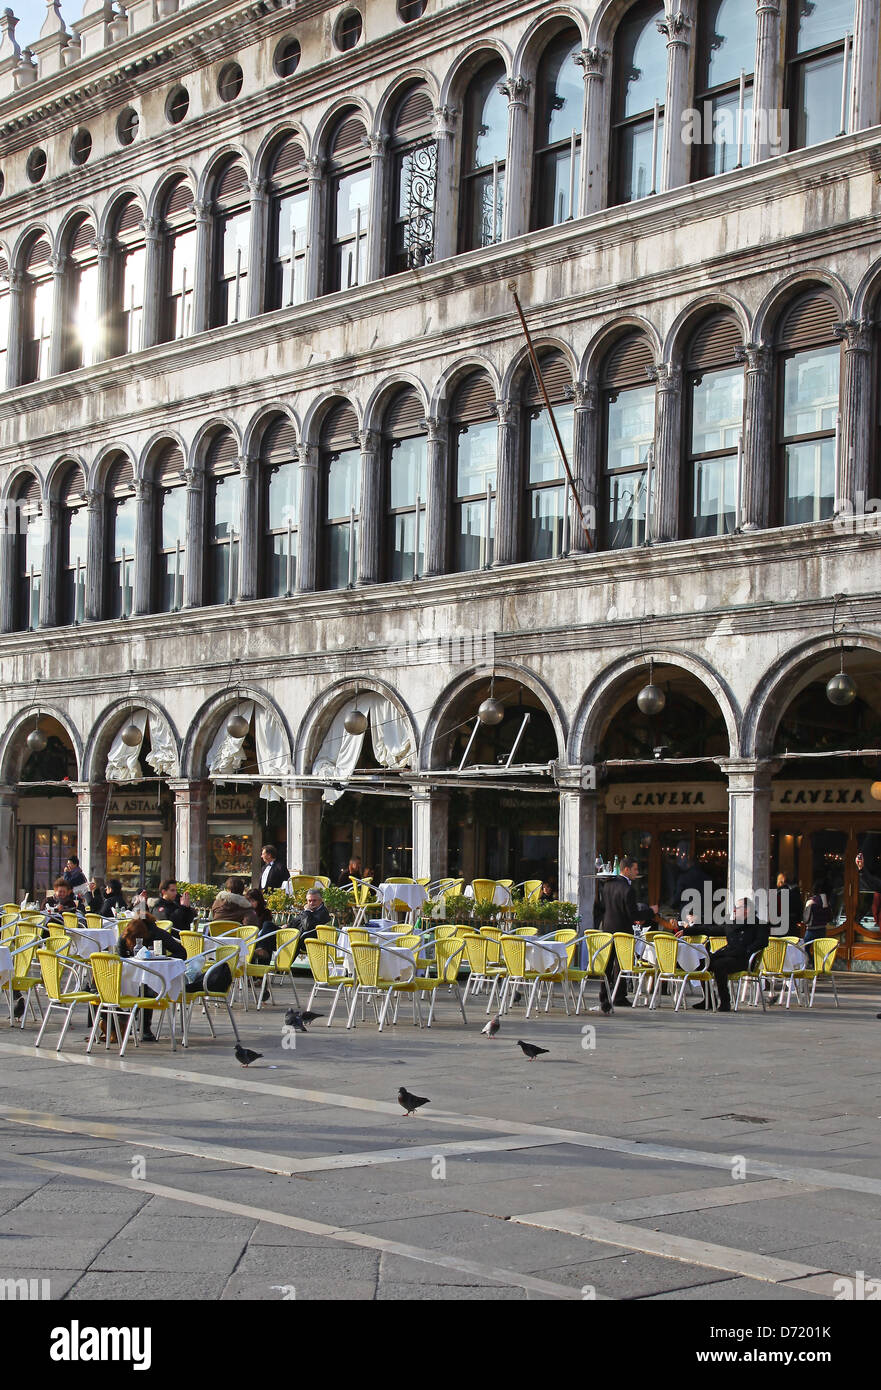 L'un des cafés en plein air en face de la Procuratie Vecchie dans la place St Marc ou la Piazza San Marco Venise Italie Banque D'Images